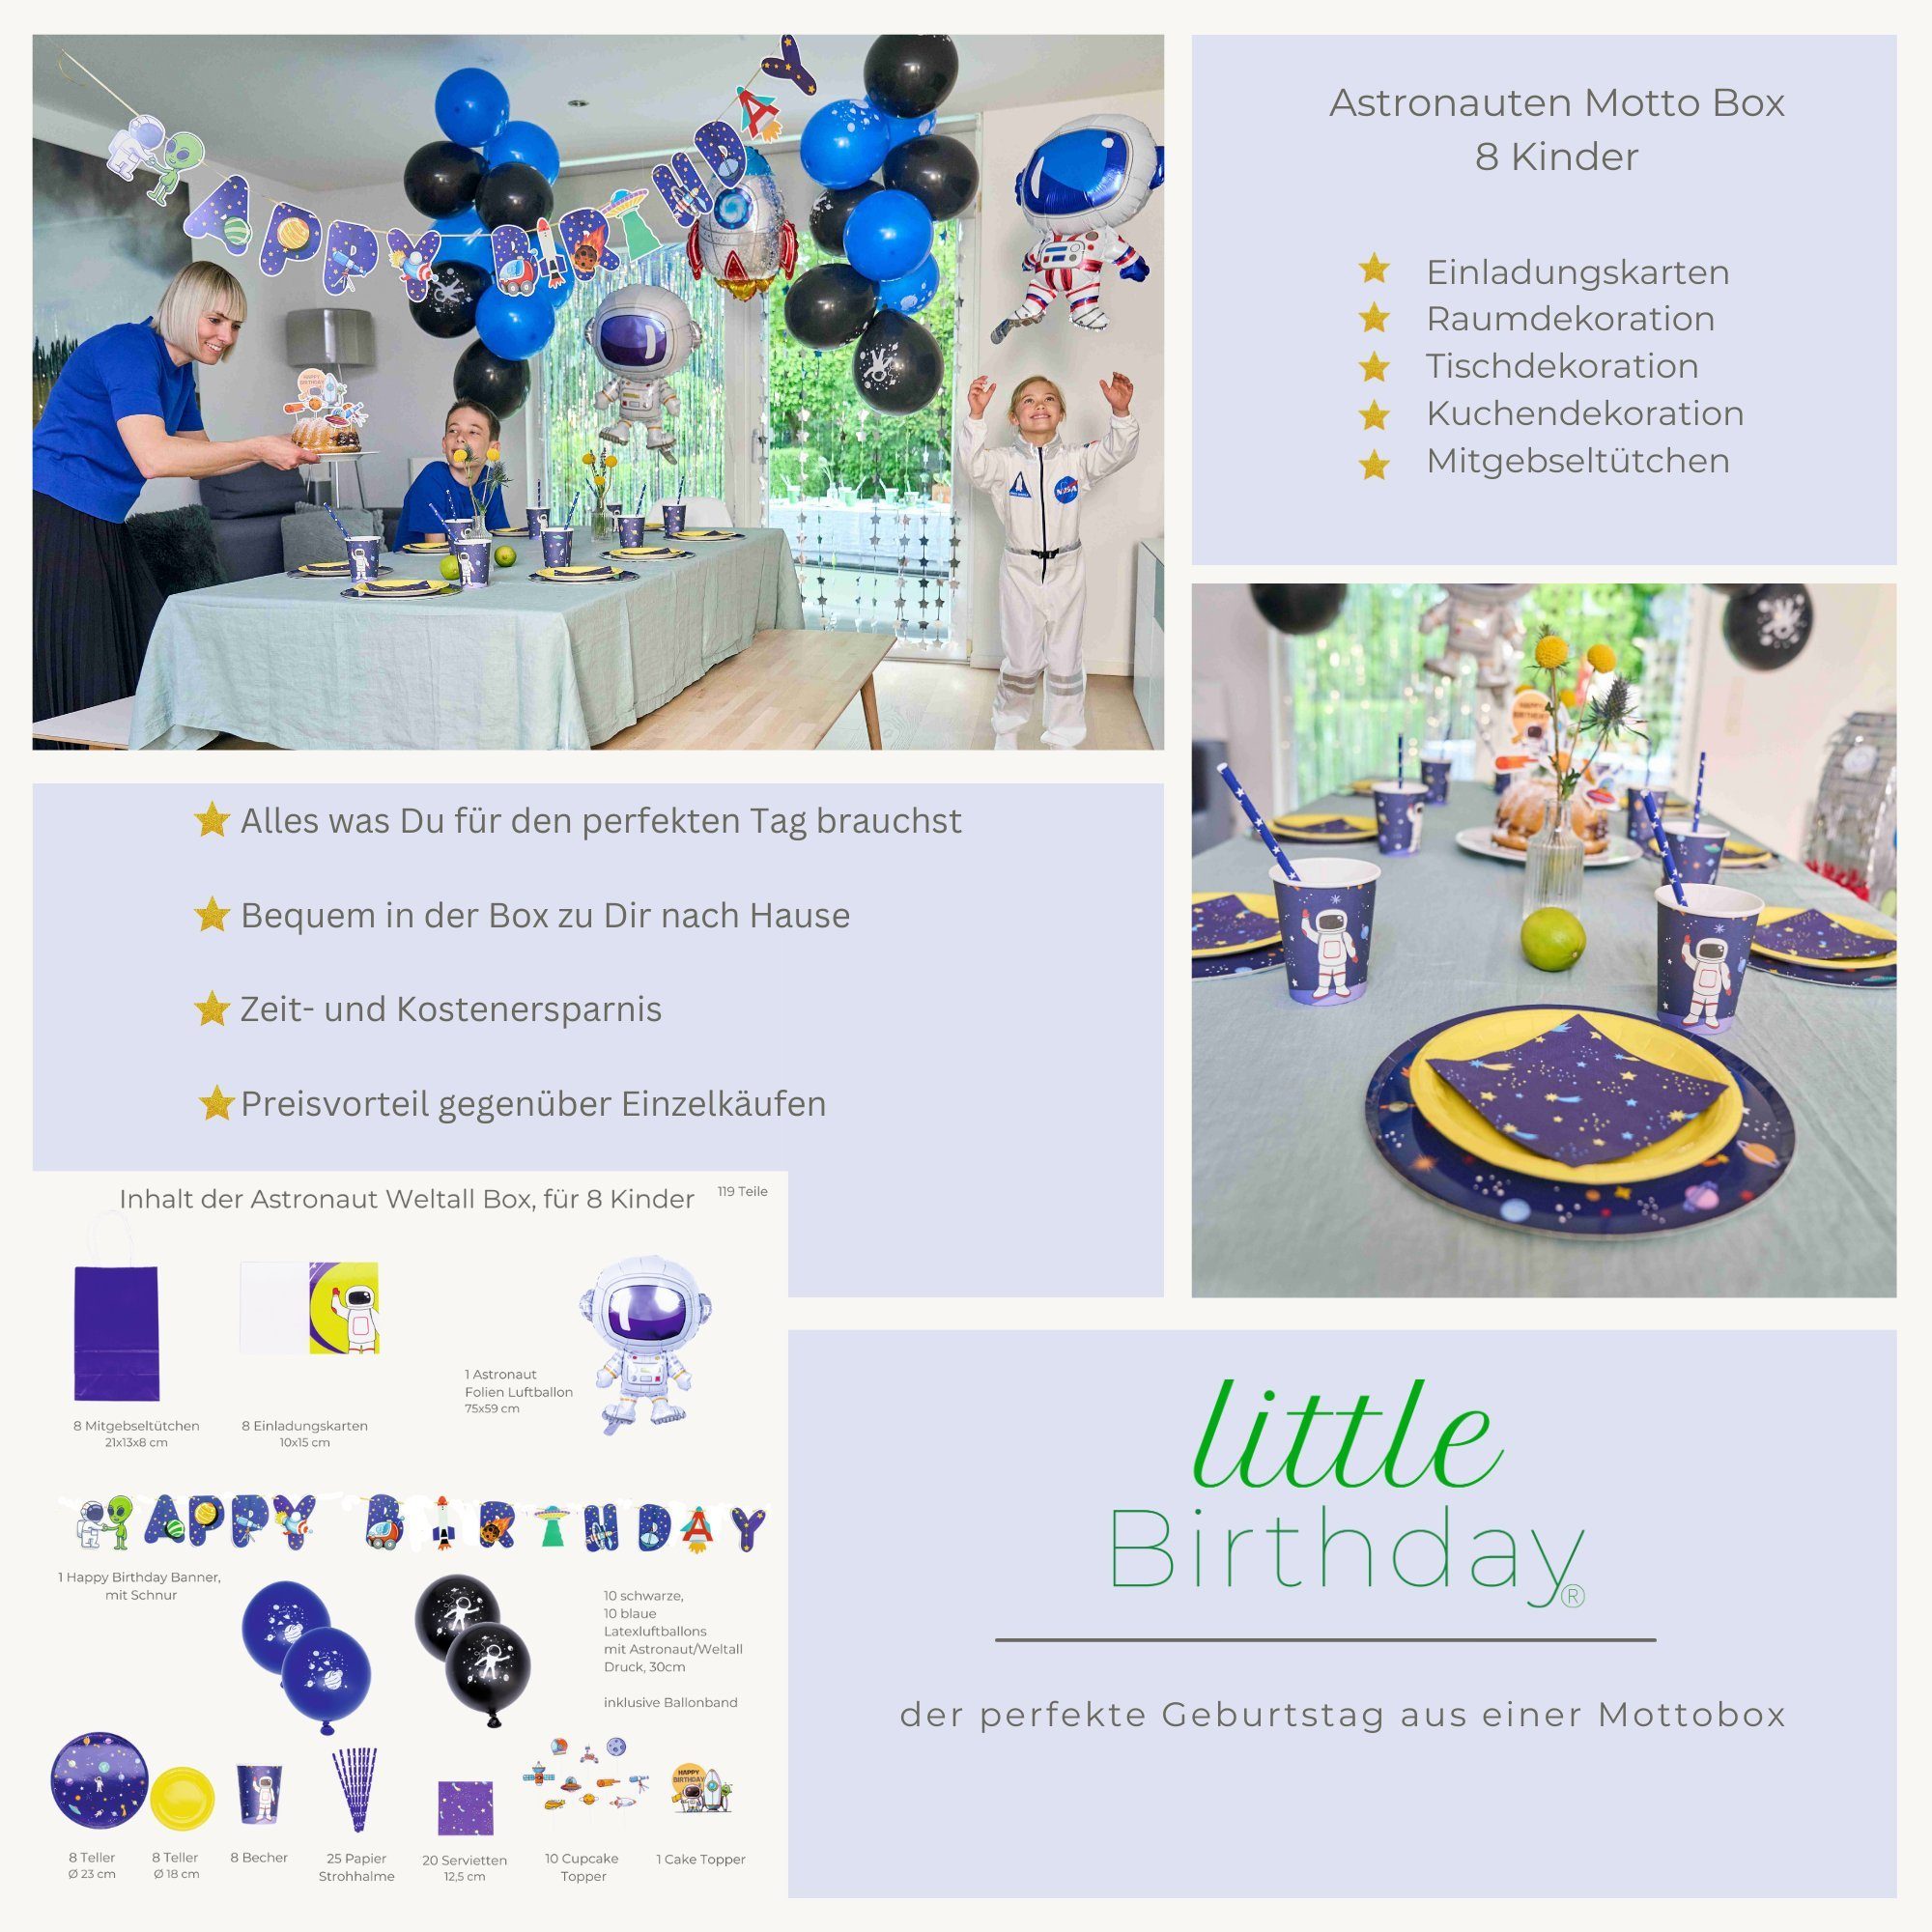 8 Kindergeburtstag, - aus Astronauten einem für Kinder, Set Papierdekoration Birthday Mottobox für Teile little Birthday 119 little